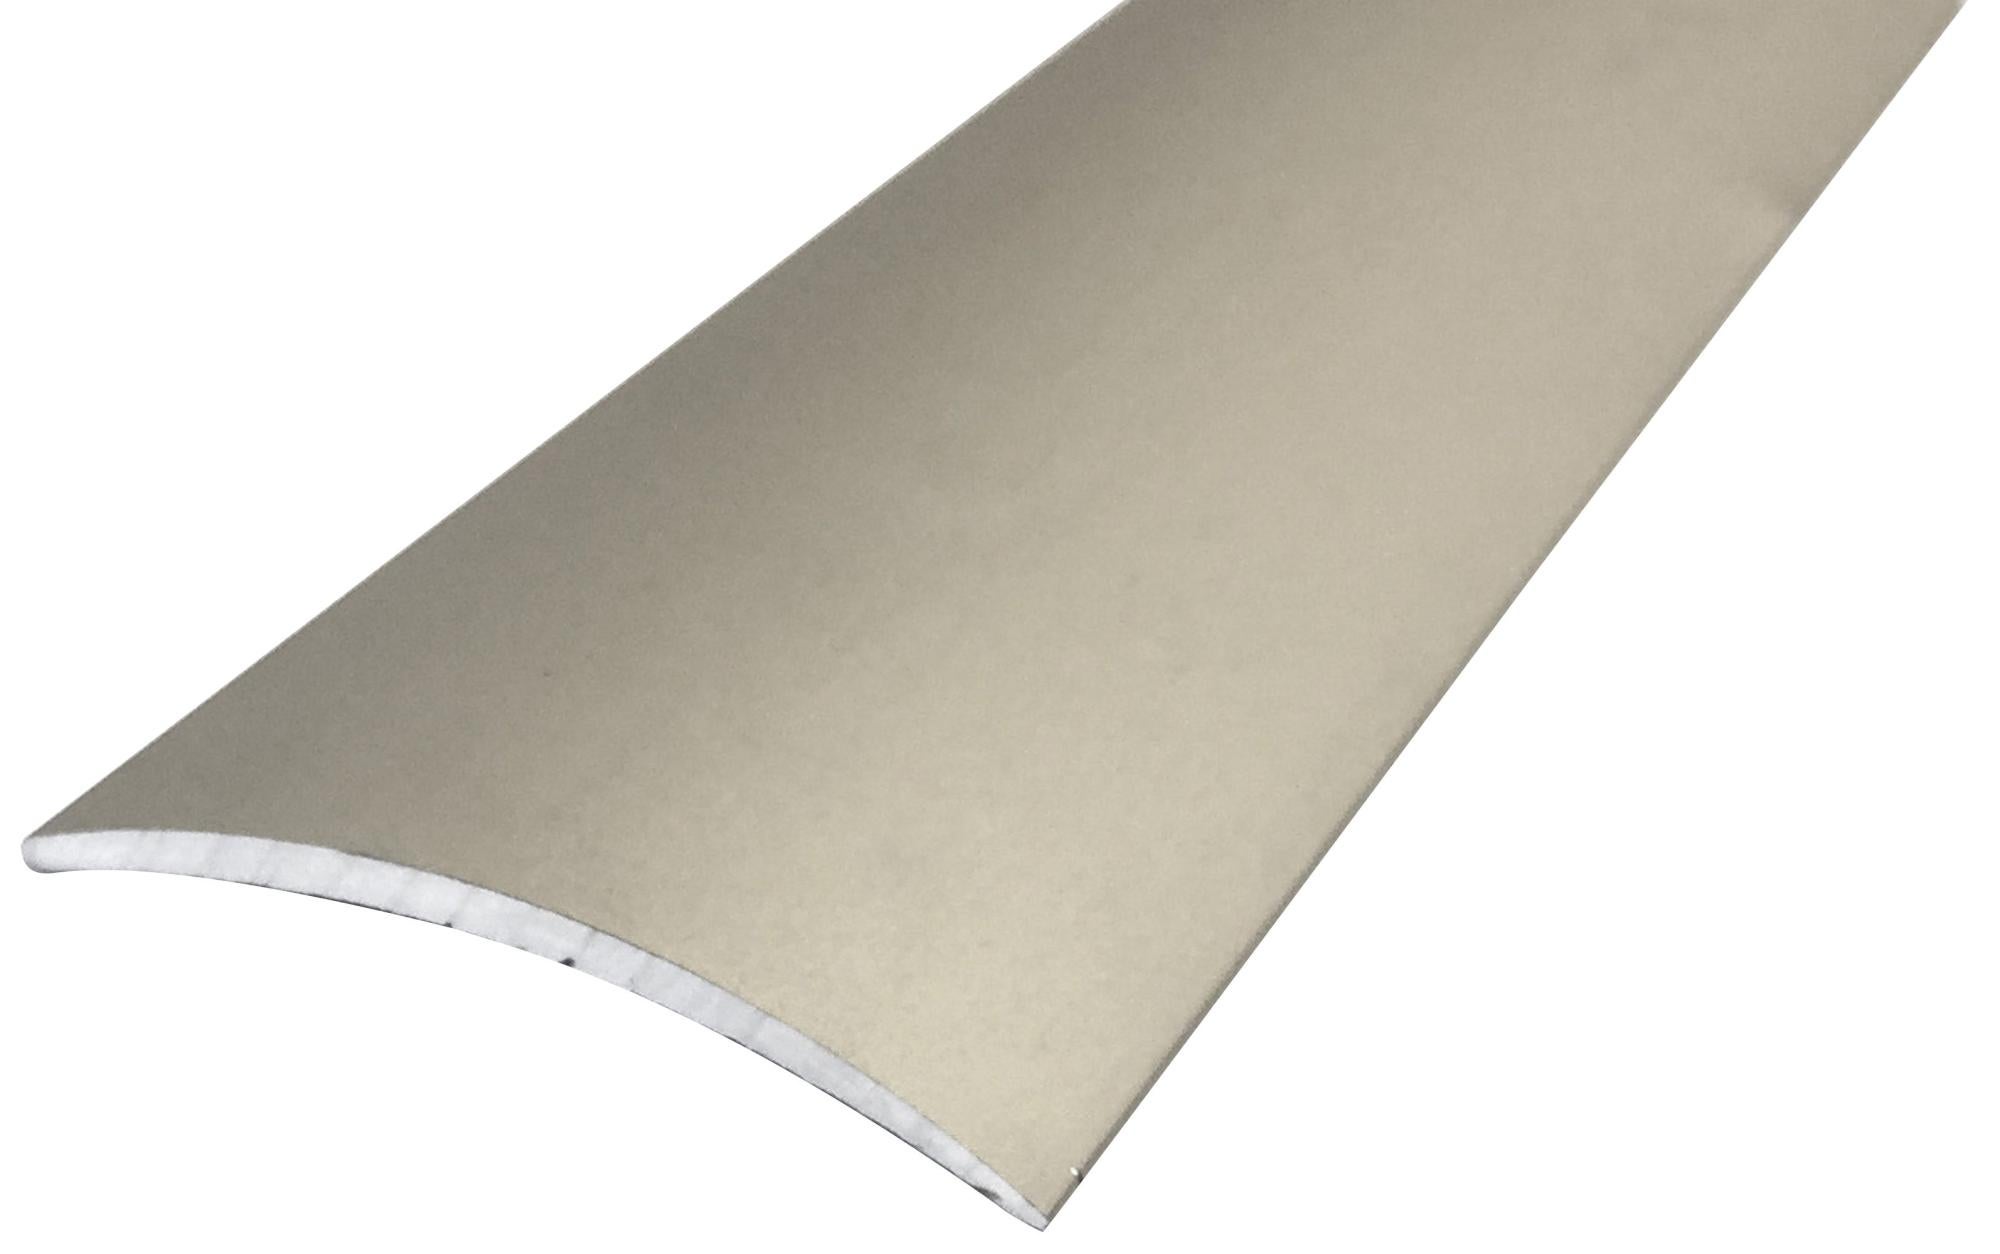 Perfil de acabado de aluminio gris / plata 166 cm